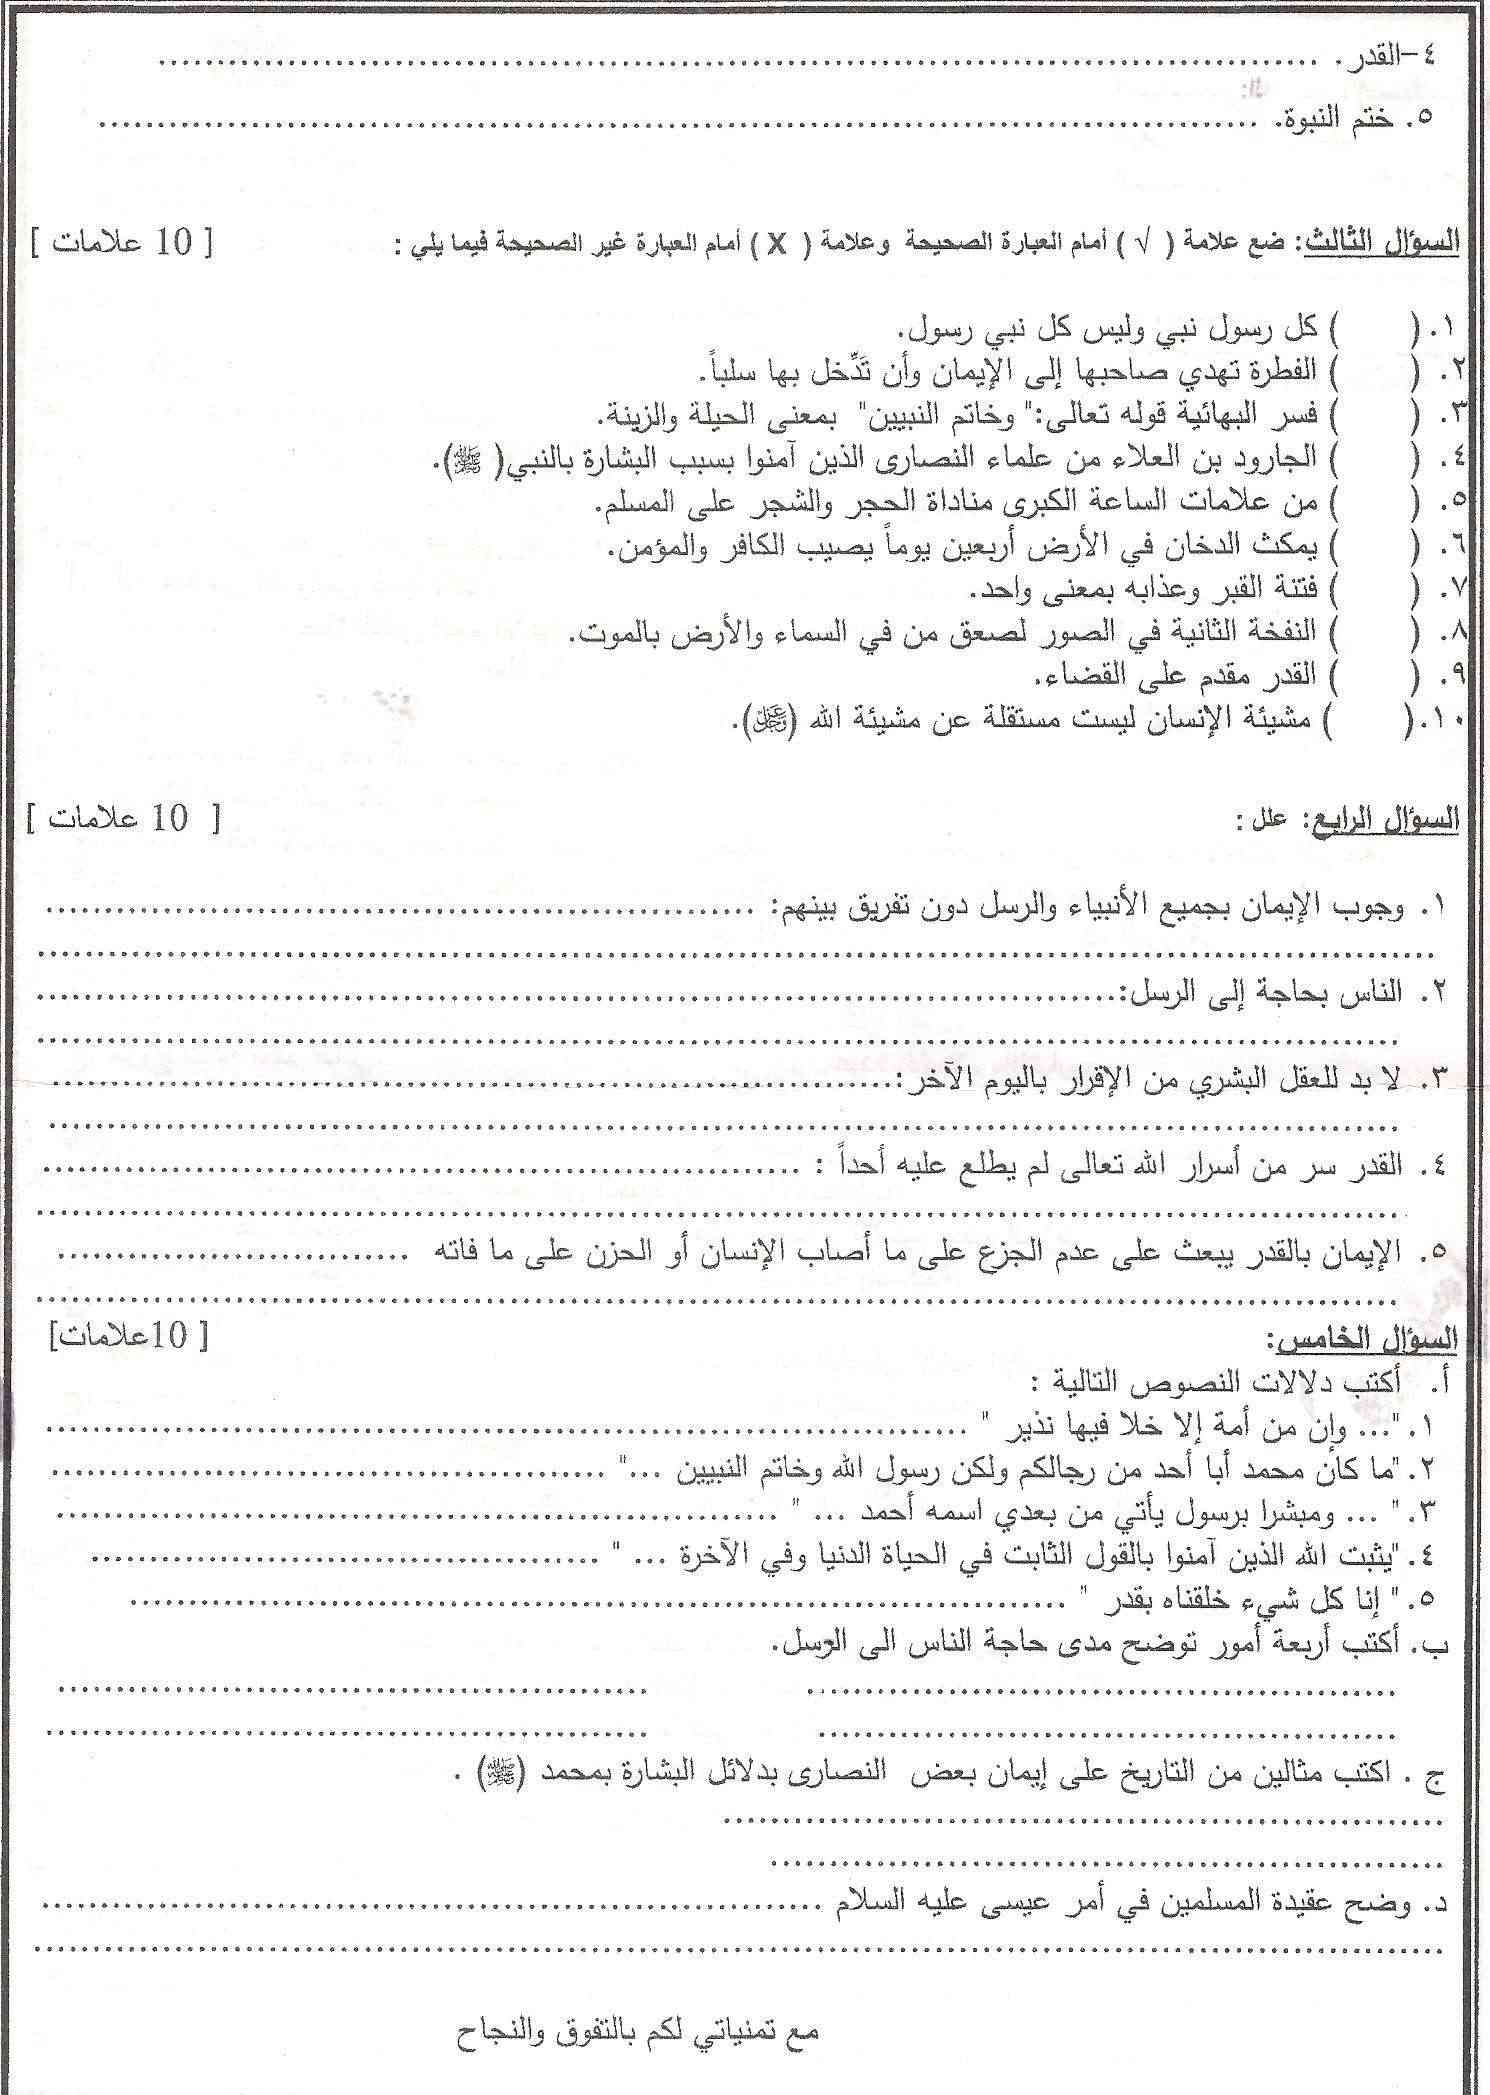 امتحان العقيدة الاسلامية الحادي عشر شرعي(نهاية الفصل الثاني) مديرية الوسطى 2012م - 2013م Ouusoo11